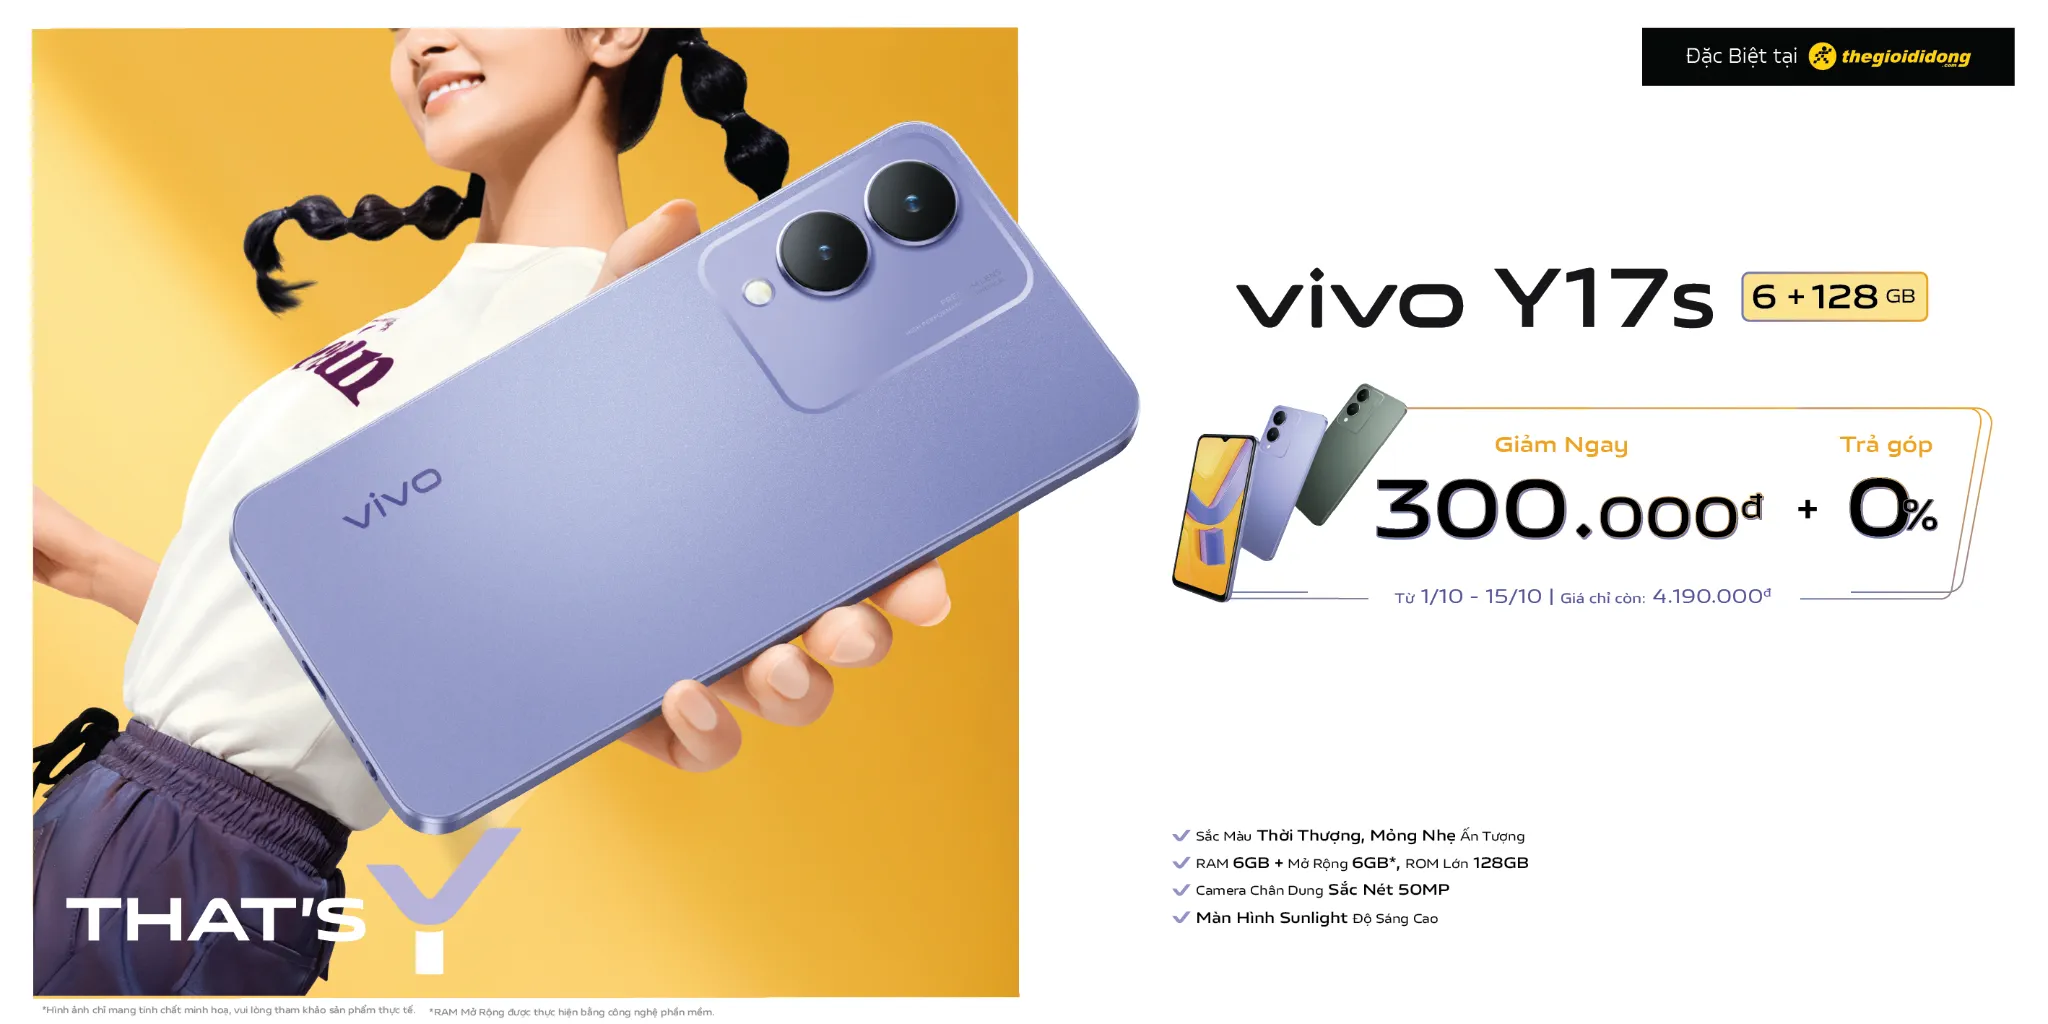 vivo Y17s – Smartphone 4 triệu sở hữu mọi công nghệ với mức giá tốt nhất